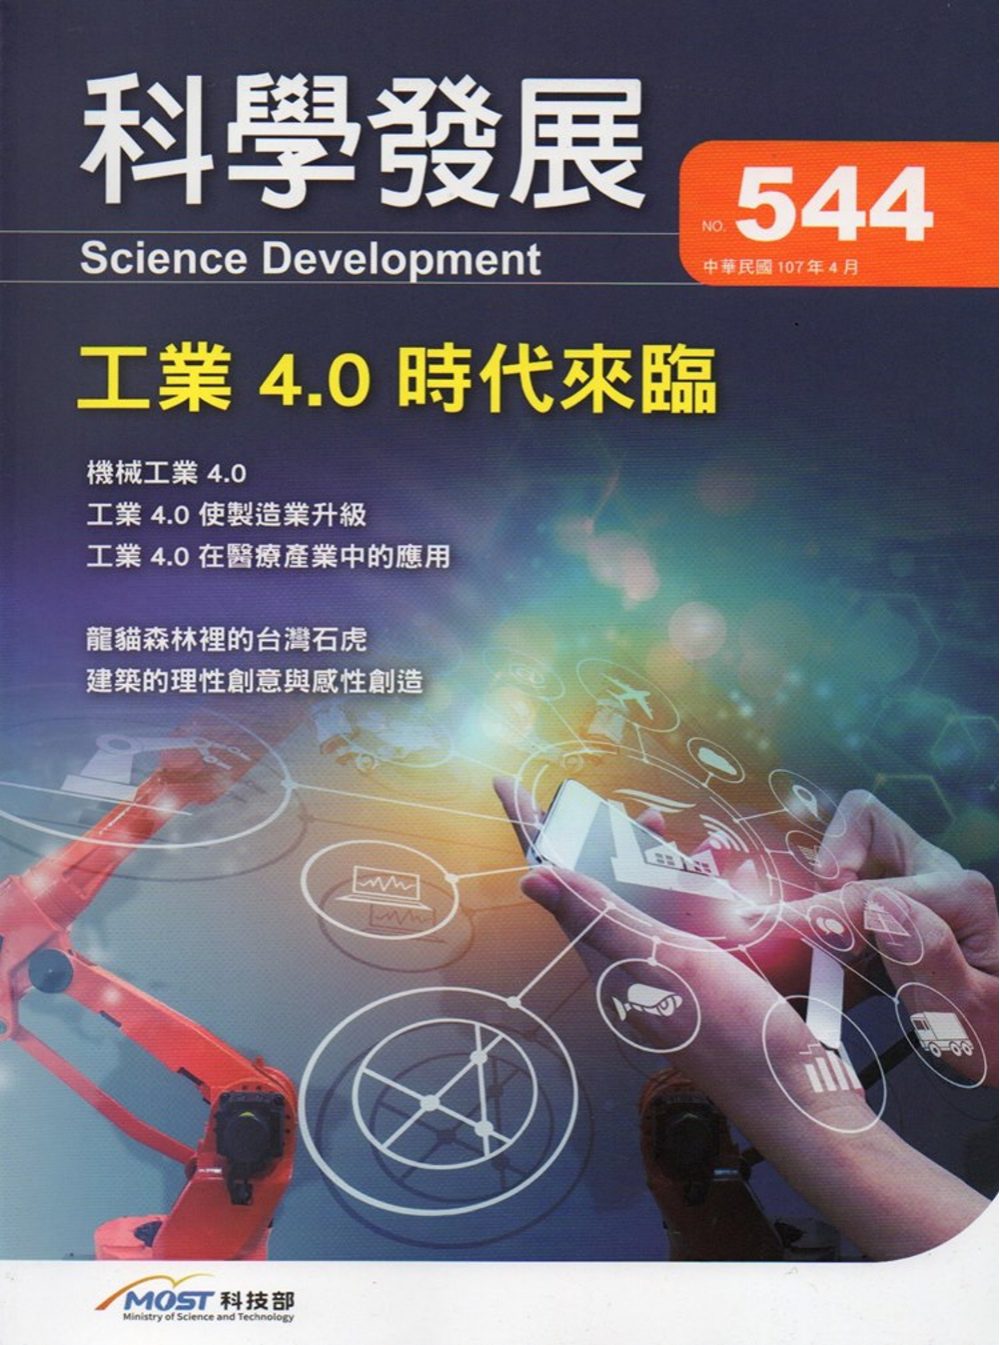 科學發展月刊第544期(107/04)